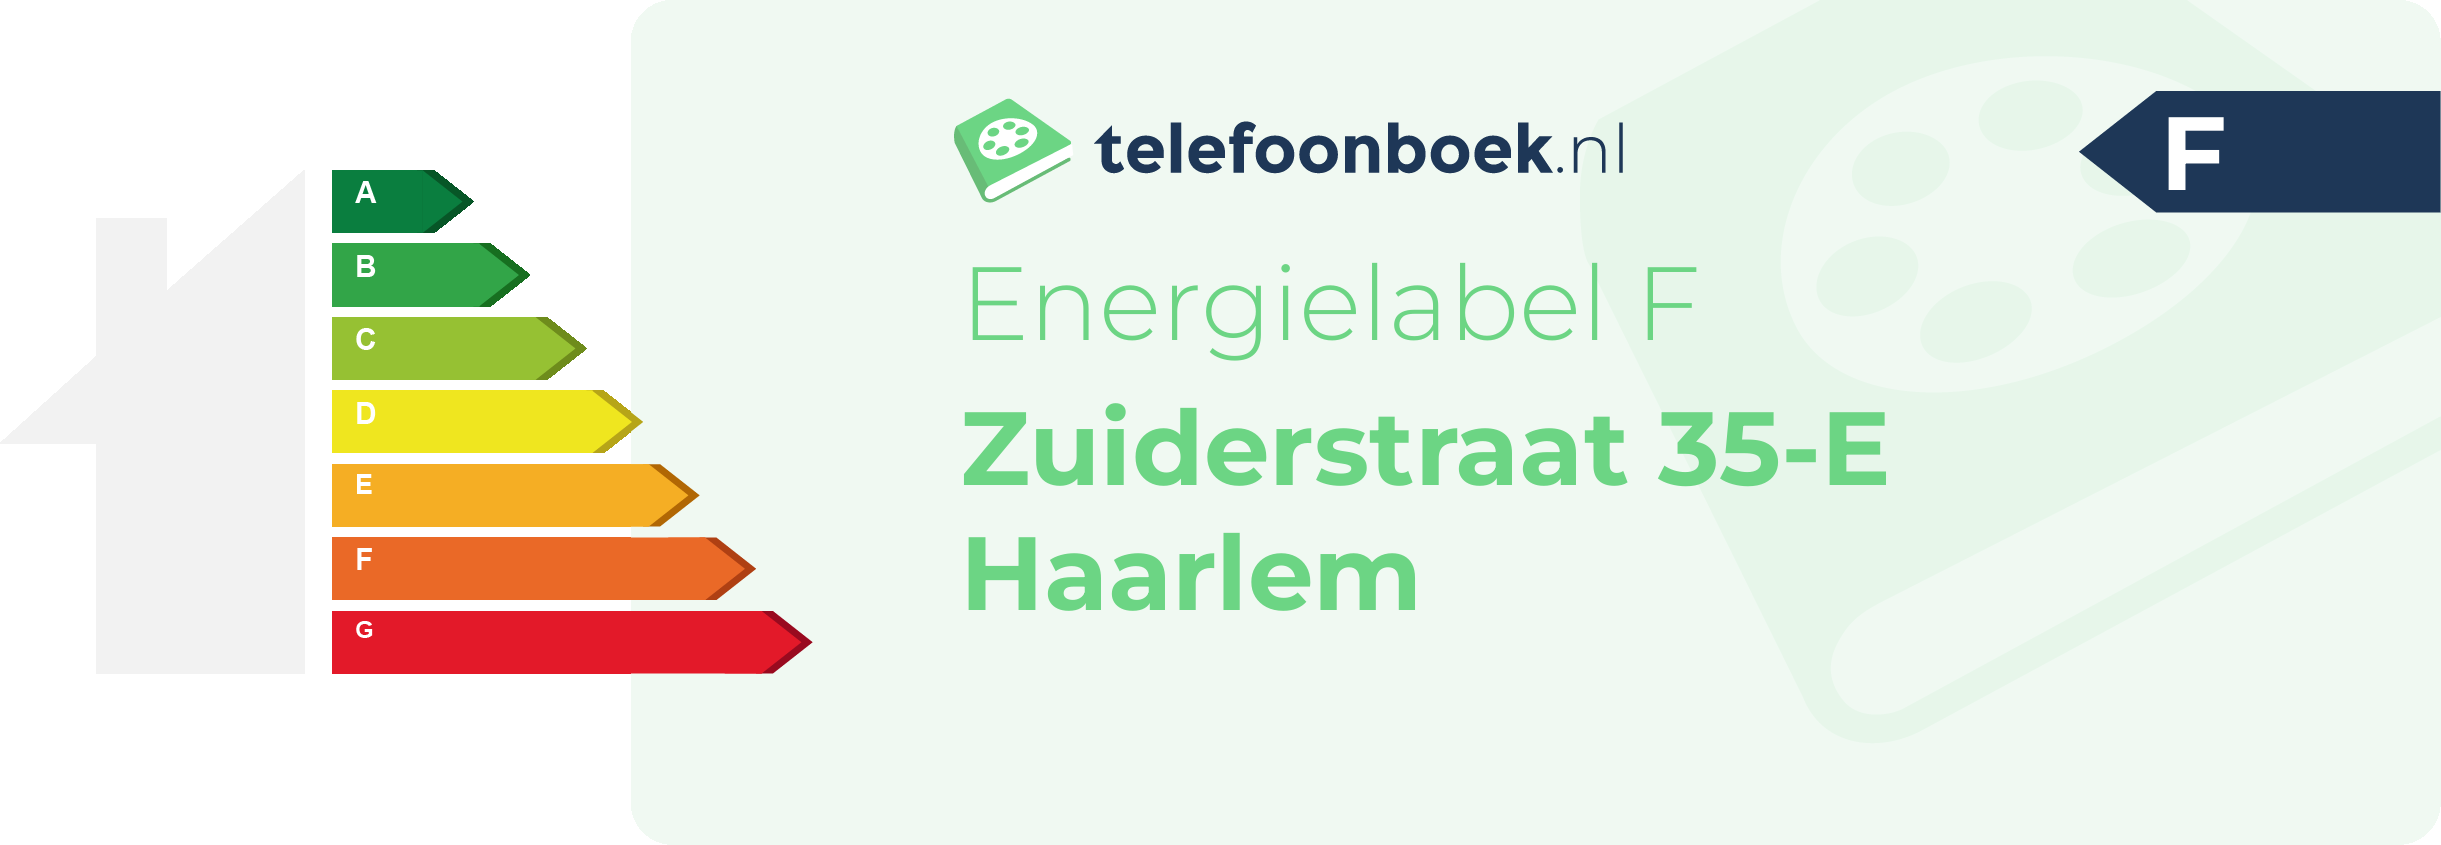 Energielabel Zuiderstraat 35-E Haarlem